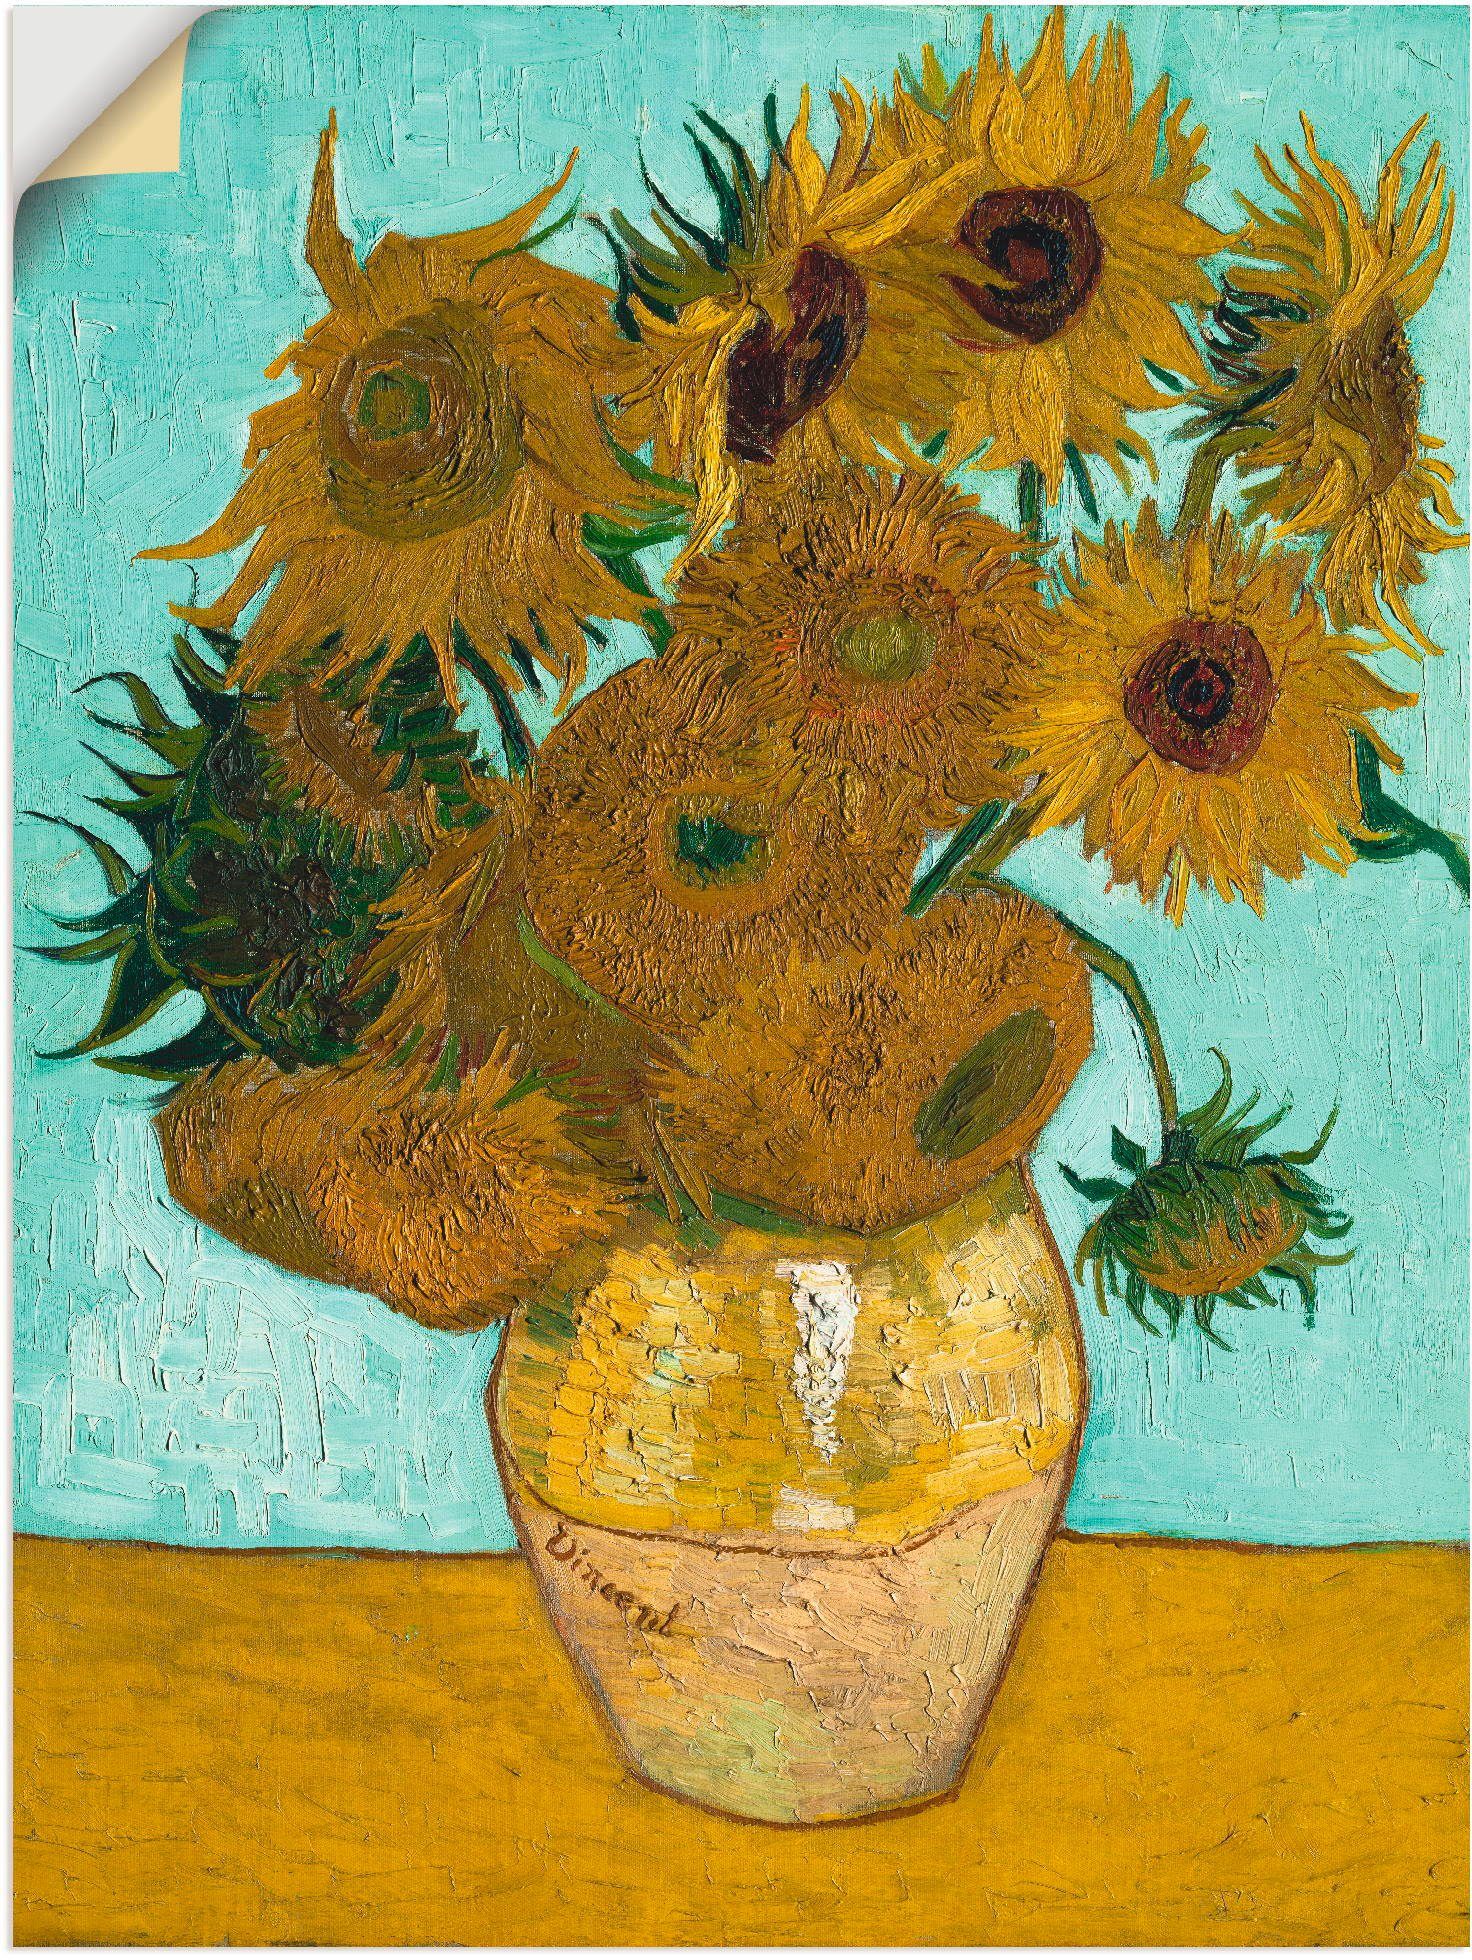 Artland Artprint Vaas met zonnebloemen. 1888 in vele afmetingen & productsoorten -artprint op linnen, poster, muursticker / wandfolie ook geschikt voor de badkamer (1 stuk)